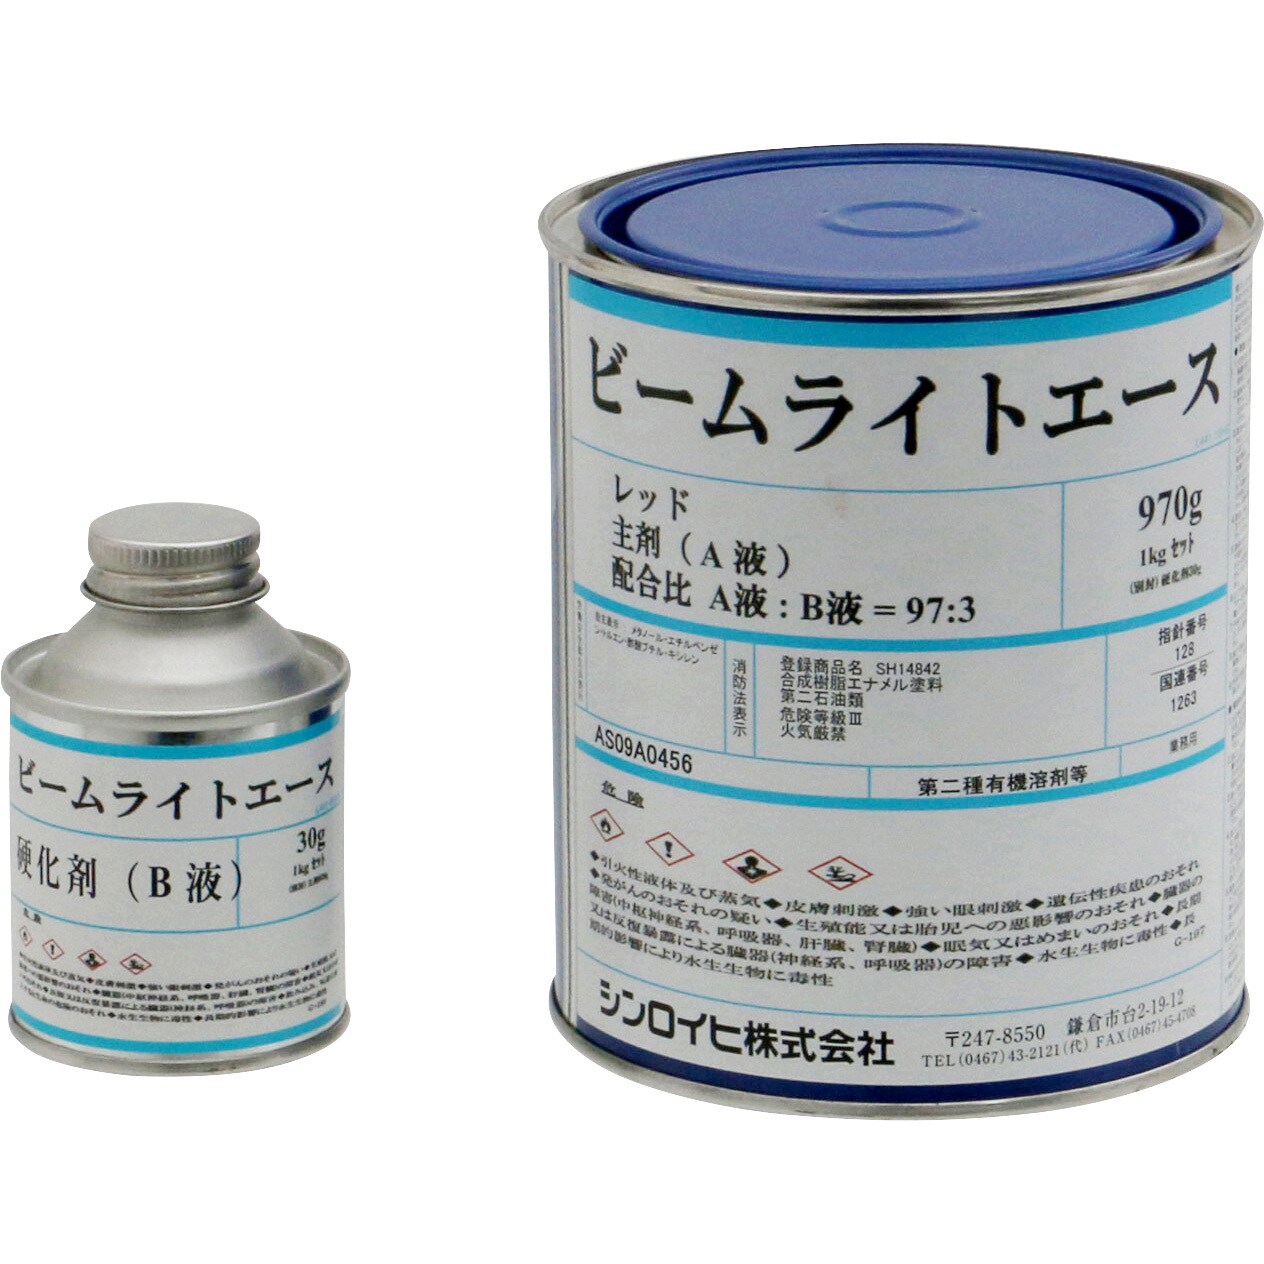 2001MH ビームライトエース 1缶(1kg) シンロイヒ 【通販サイトMonotaRO】